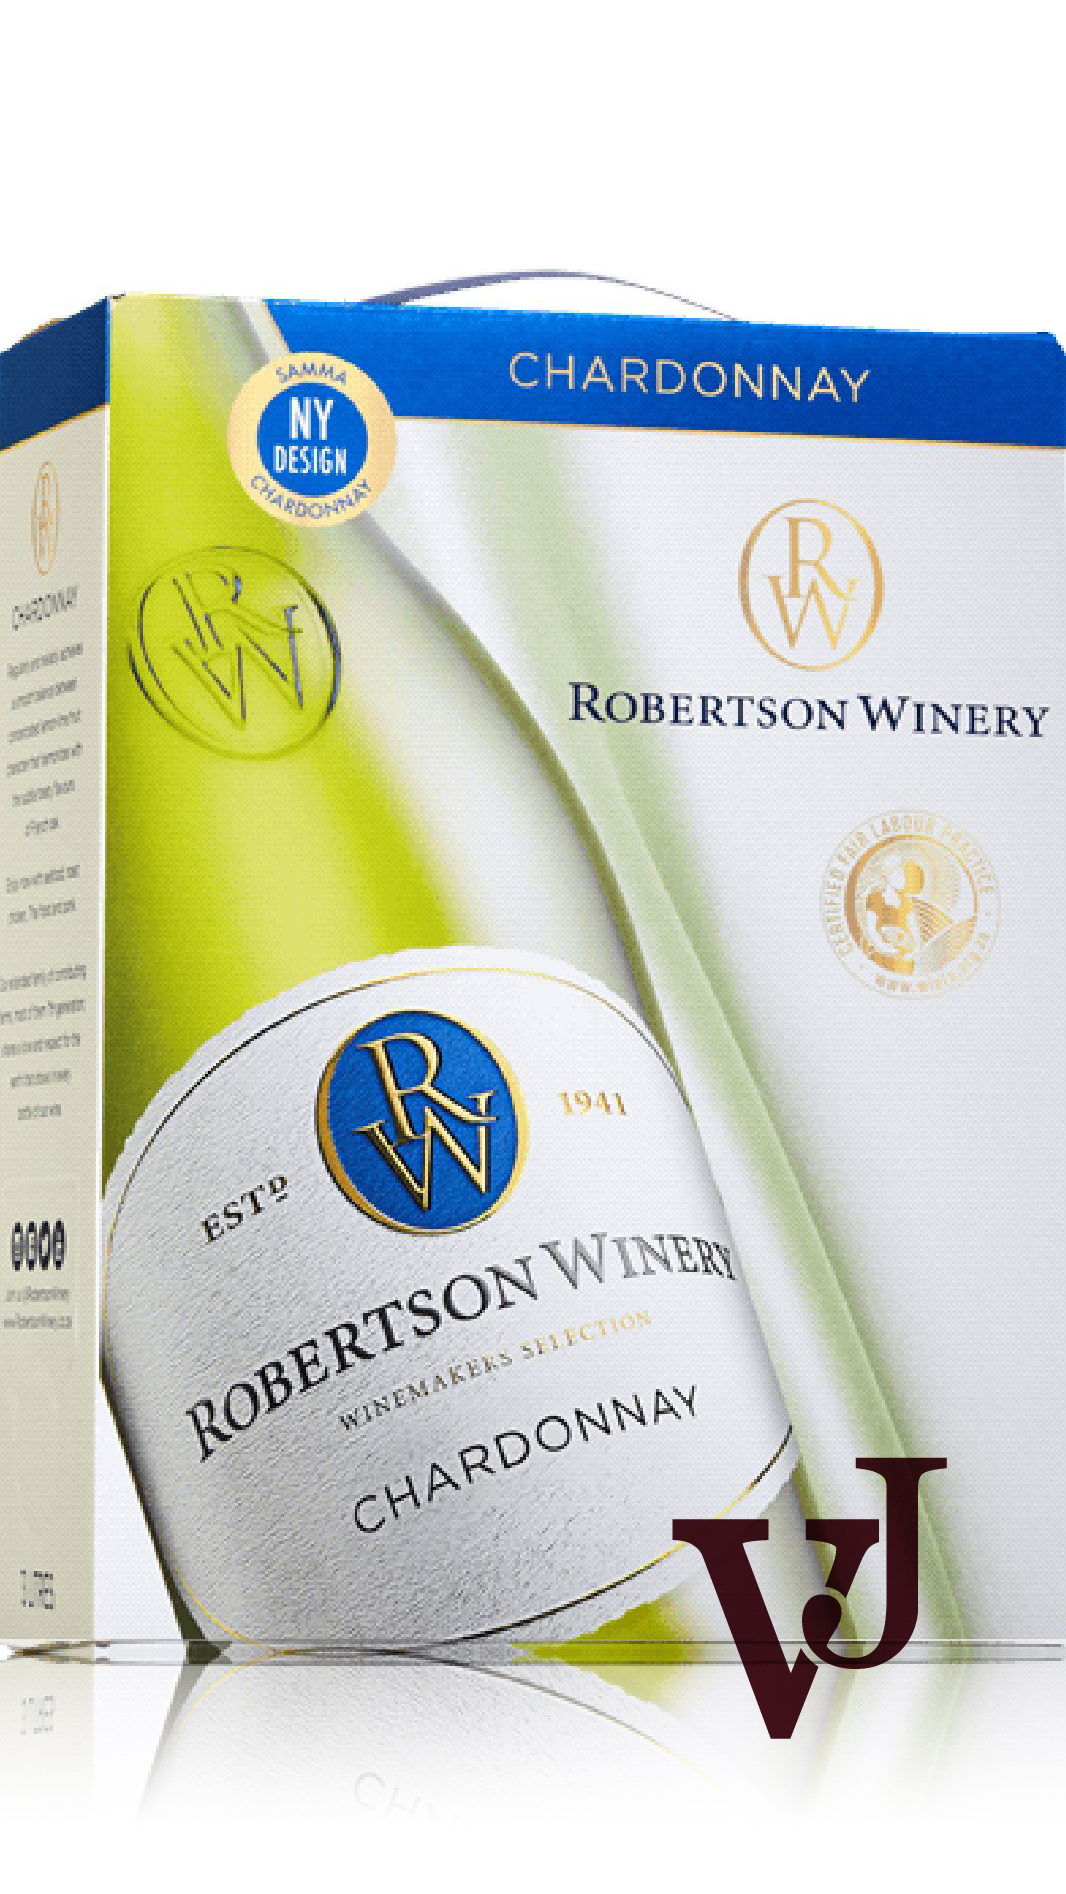 Vitt Vin - Robertson Chardonnay artikel nummer 1209408 från producenten Robertson Winery från området Sydafrika